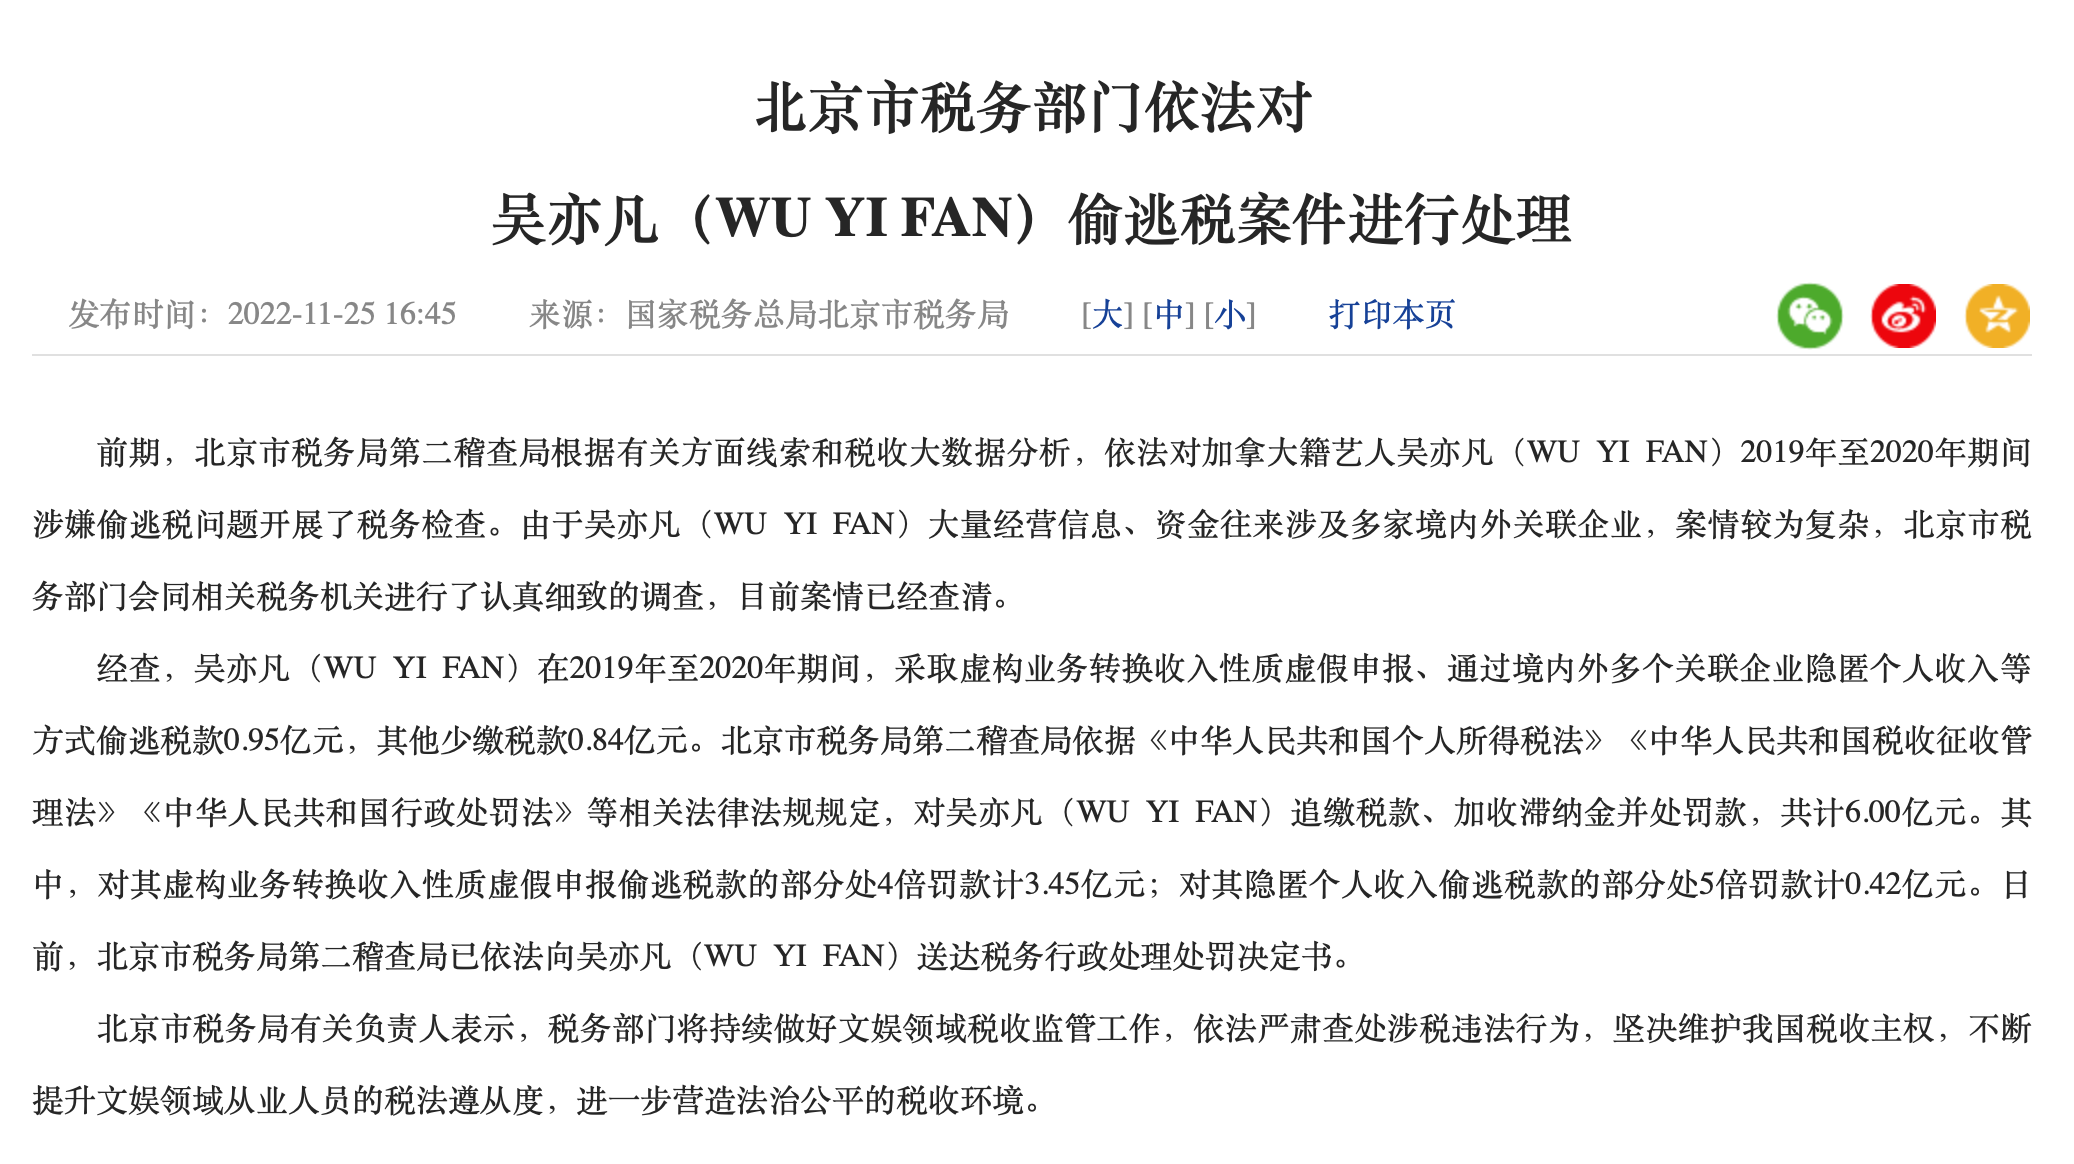 北京市税务部门依法对吴亦凡（WU YI FAN）偷逃税案件进行处理